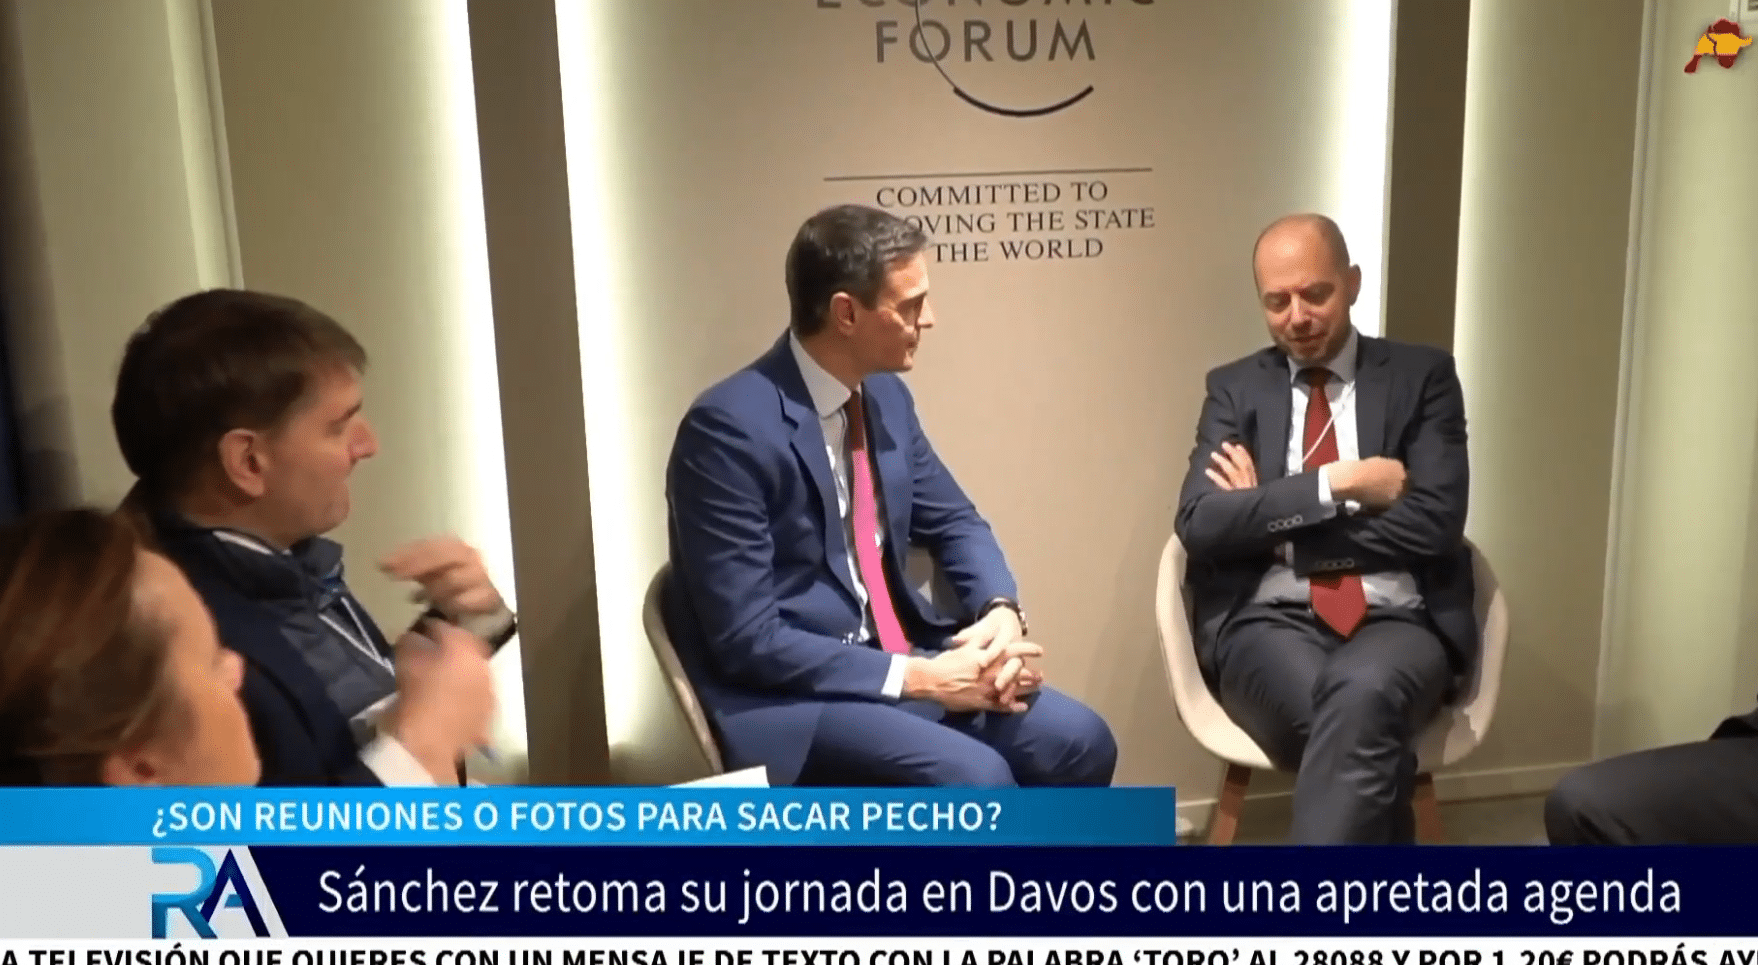 ¿Reuniones o fotos para sacar pecho?: Las mil reuniones de Sánchez en Davos